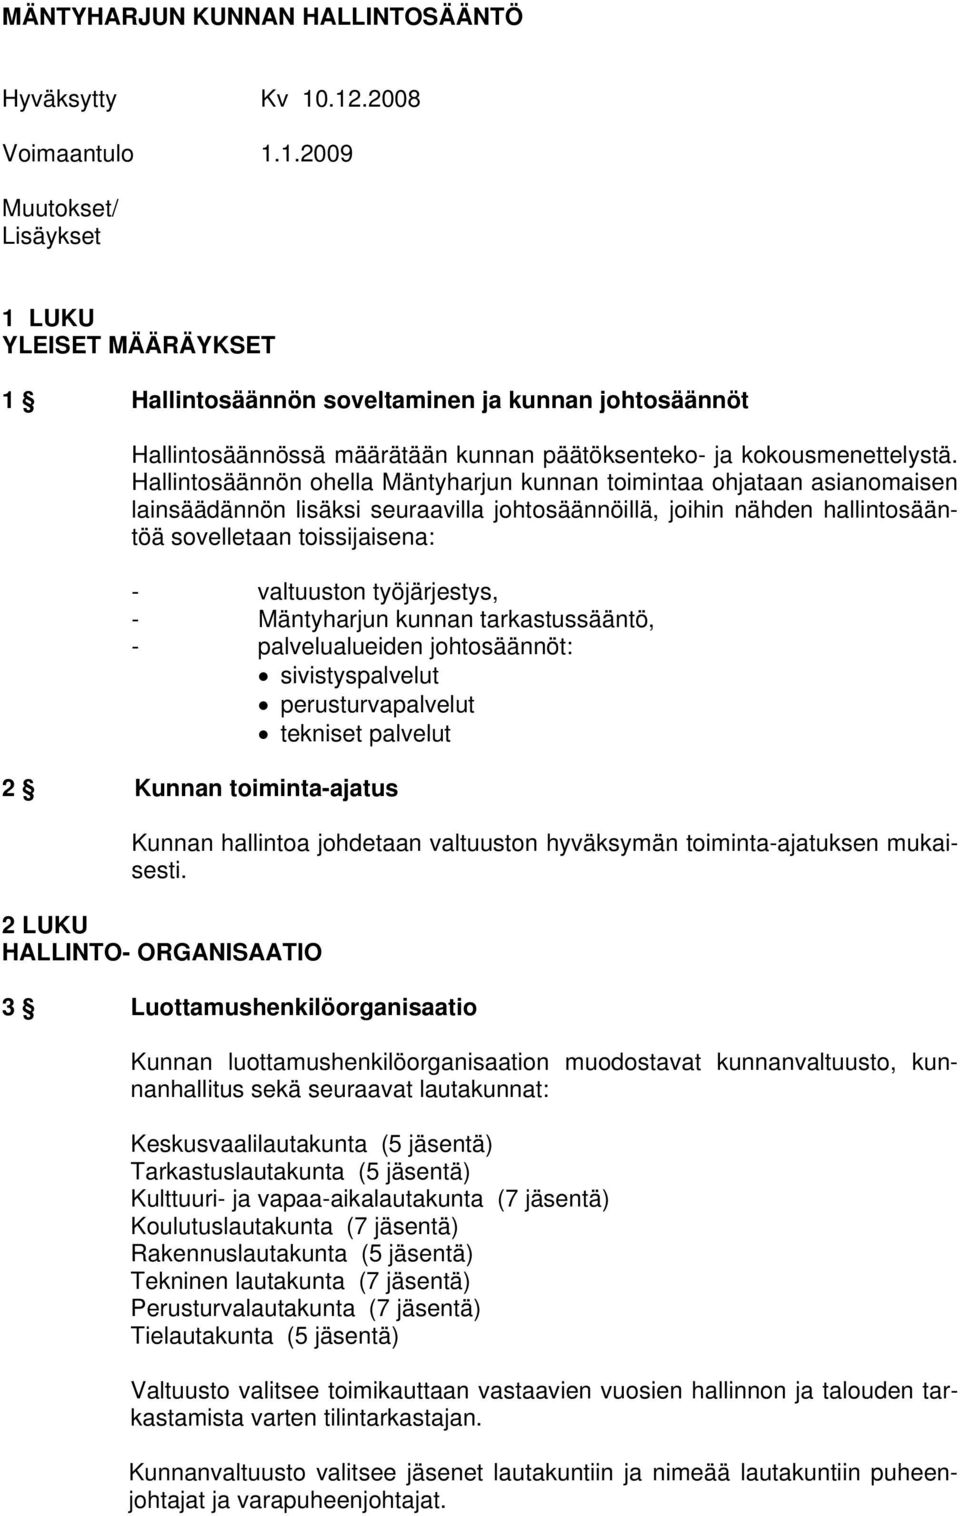 Hallintosäännön ohella Mäntyharjun kunnan toimintaa ohjataan asianomaisen lainsäädännön lisäksi seuraavilla johtosäännöillä, joihin nähden hallintosääntöä sovelletaan toissijaisena: - valtuuston